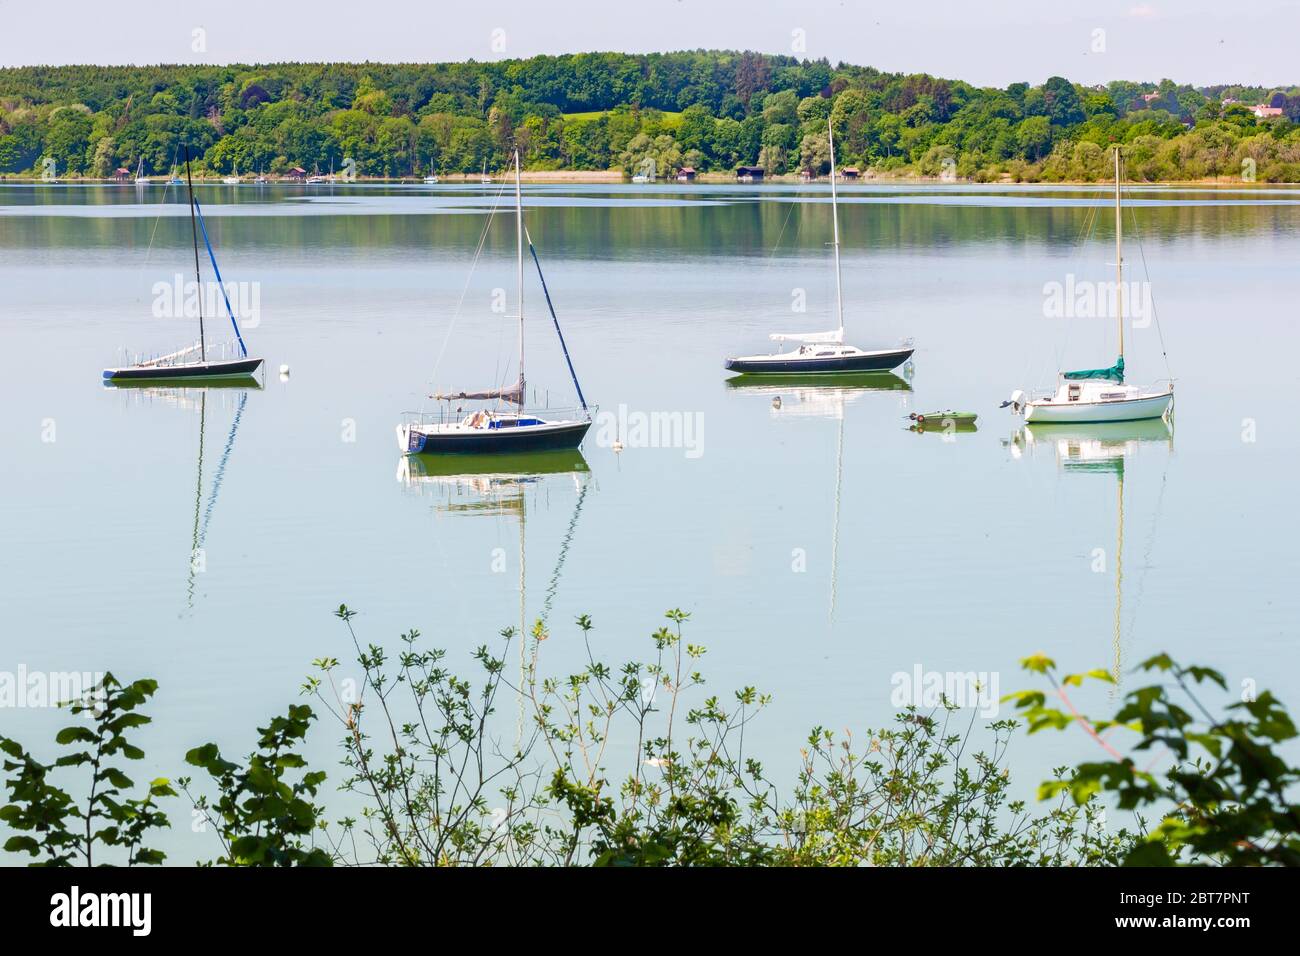 Paisaje idilico con cuatro veleros. Hojas de arbustos en primer plano. Capturado en el lago Ammer (Ammersee). Destino turístico popular. Foto de stock